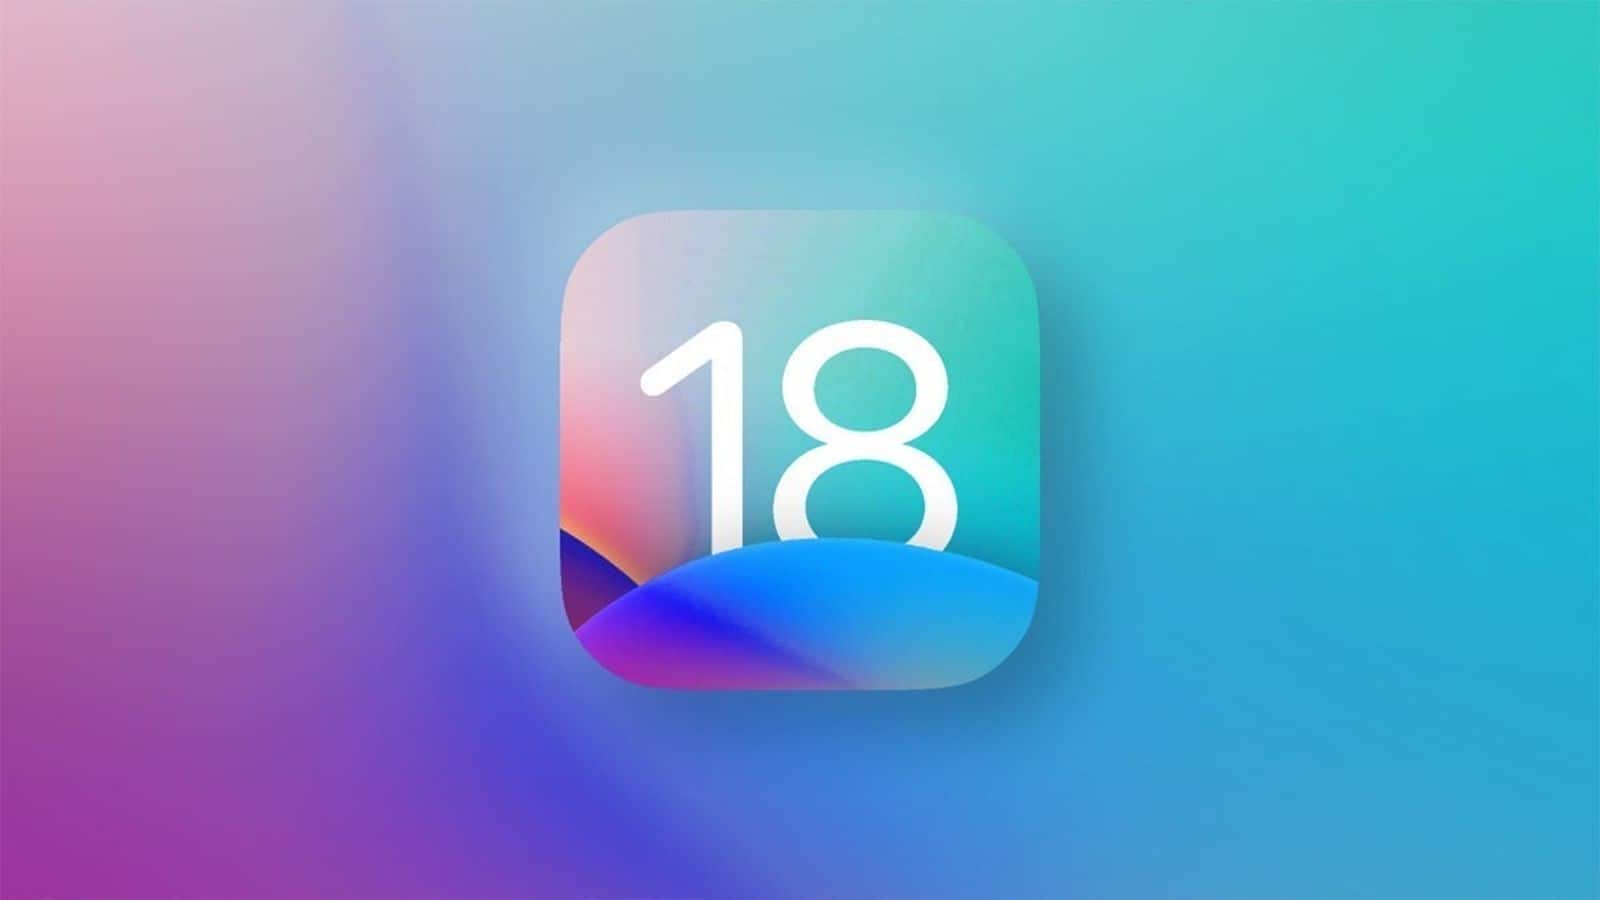 Apple's iOS 18 update to overhaul native apps on iPhones